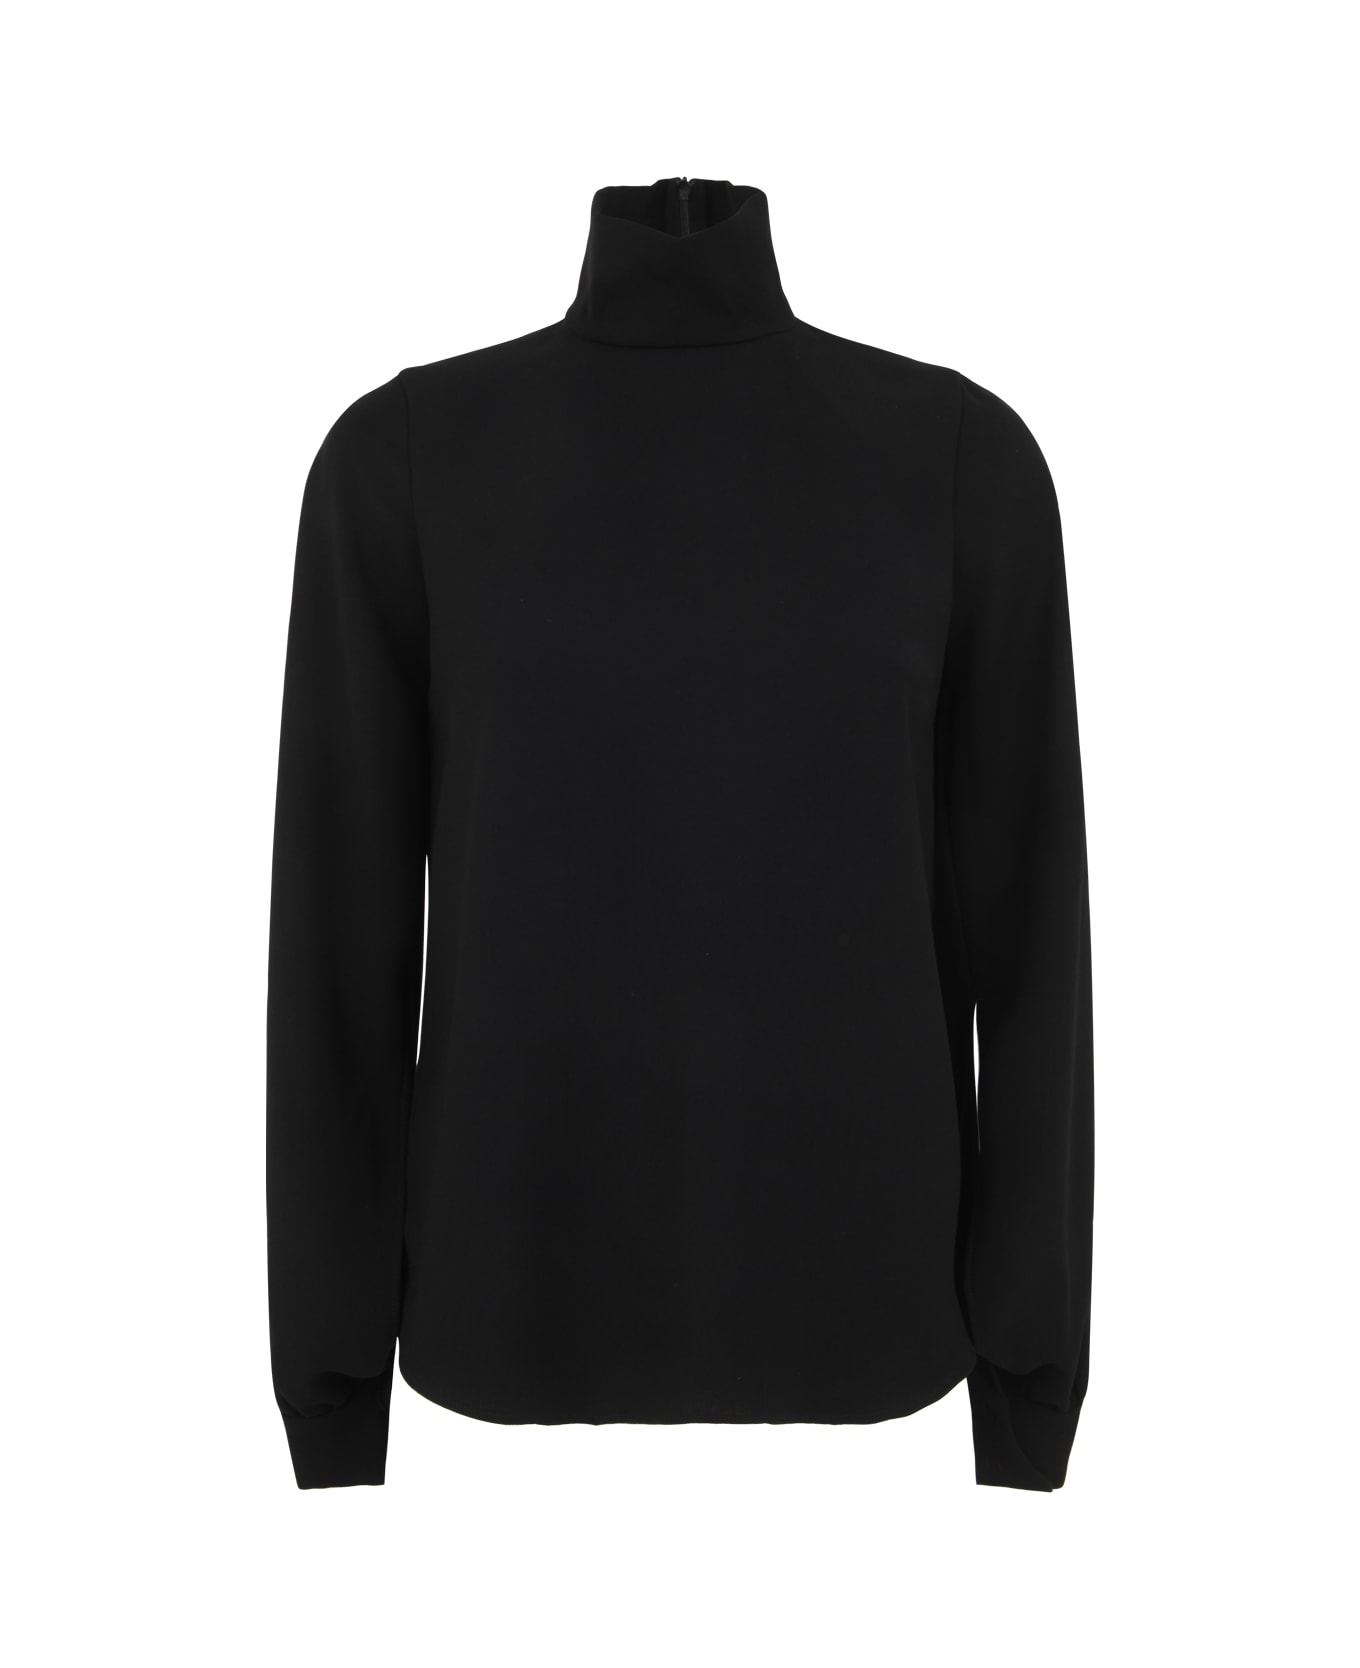 N.21 High Neck Sweater - Black ニットウェア